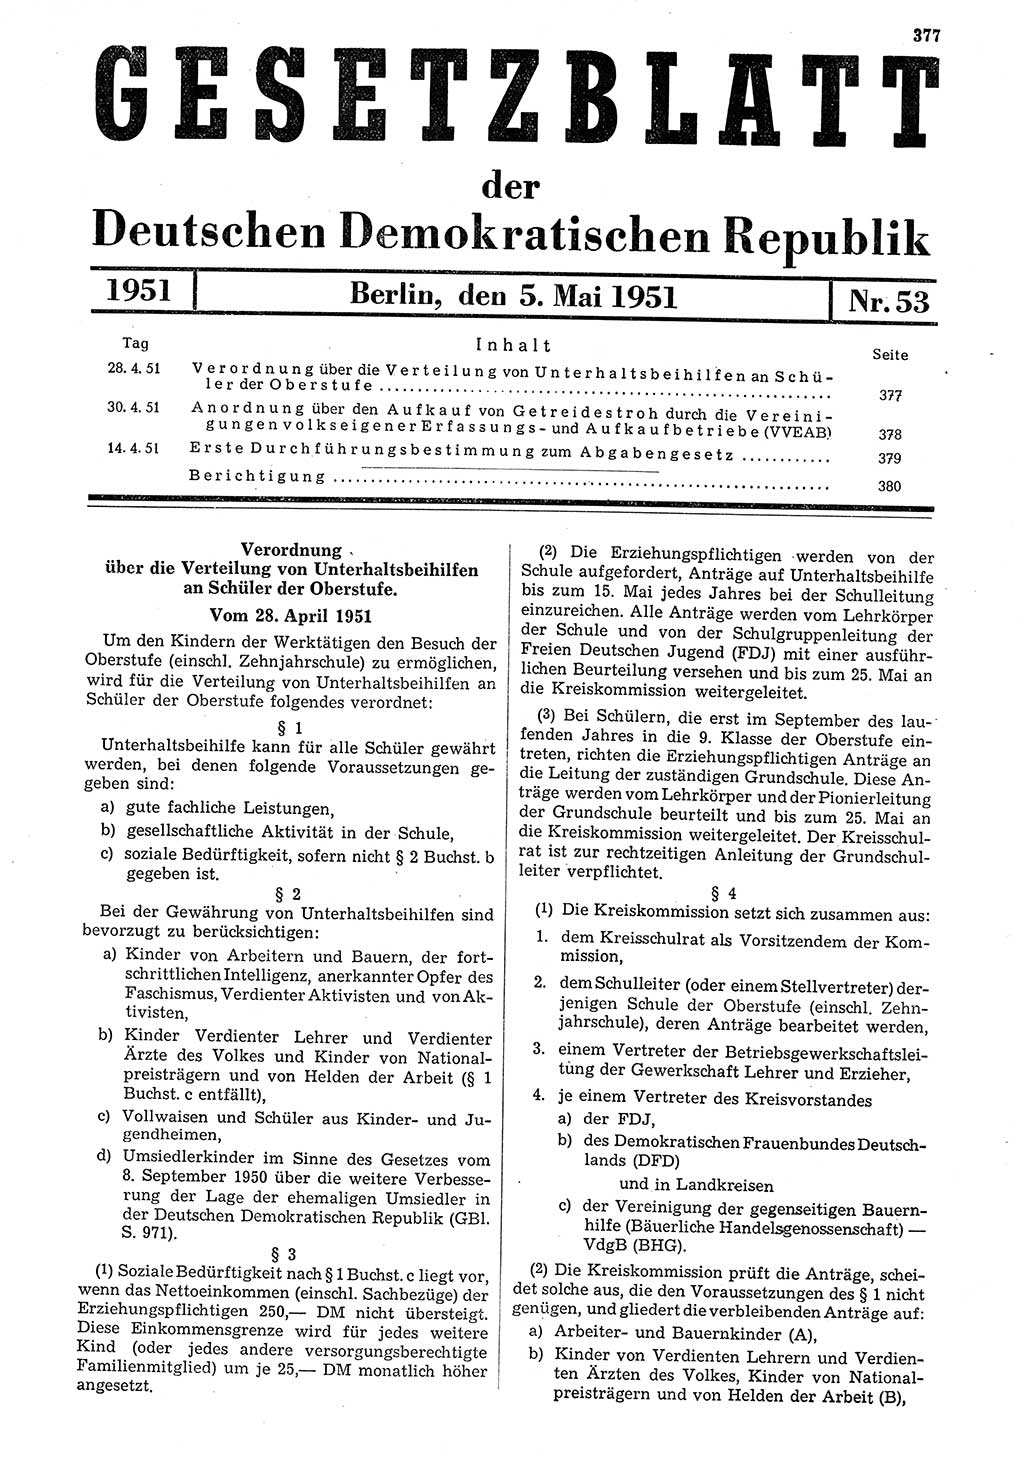 Gesetzblatt (GBl.) der Deutschen Demokratischen Republik (DDR) 1951, Seite 377 (GBl. DDR 1951, S. 377)